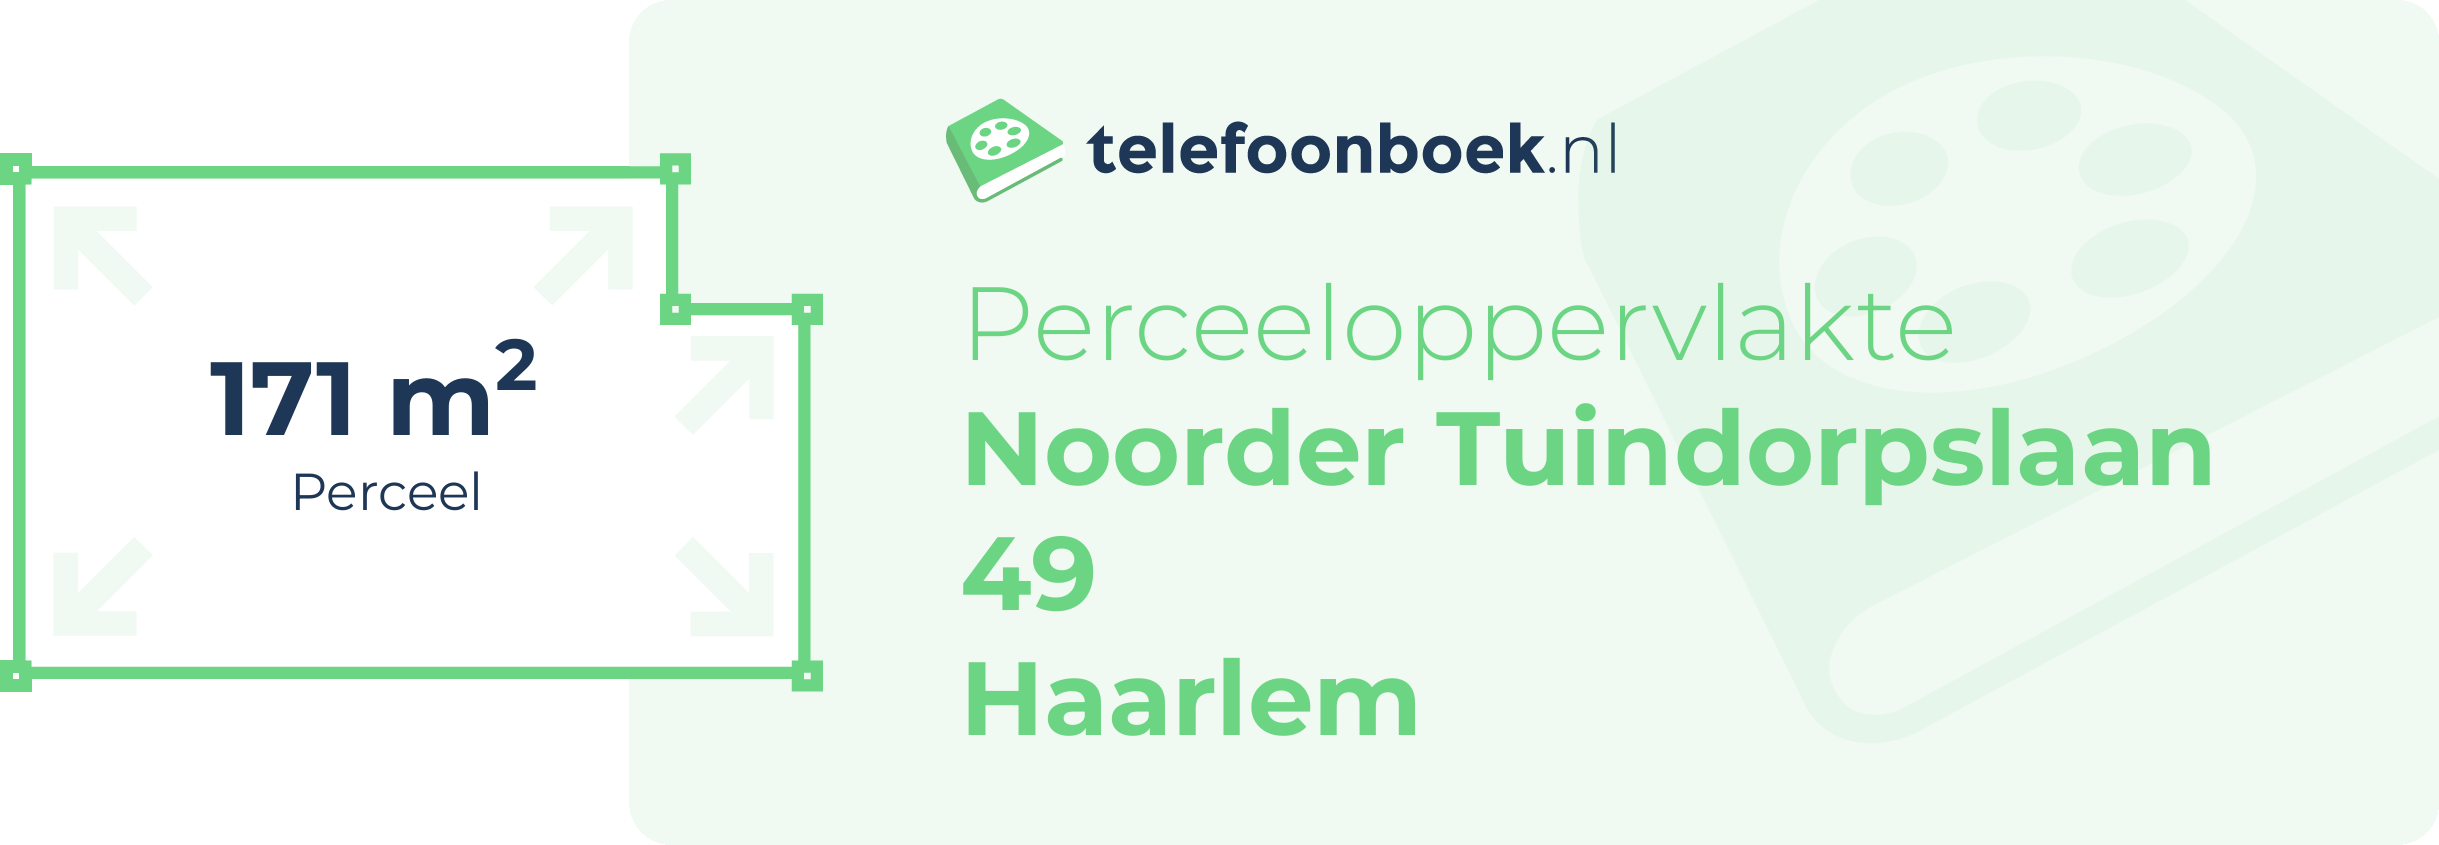 Perceeloppervlakte Noorder Tuindorpslaan 49 Haarlem